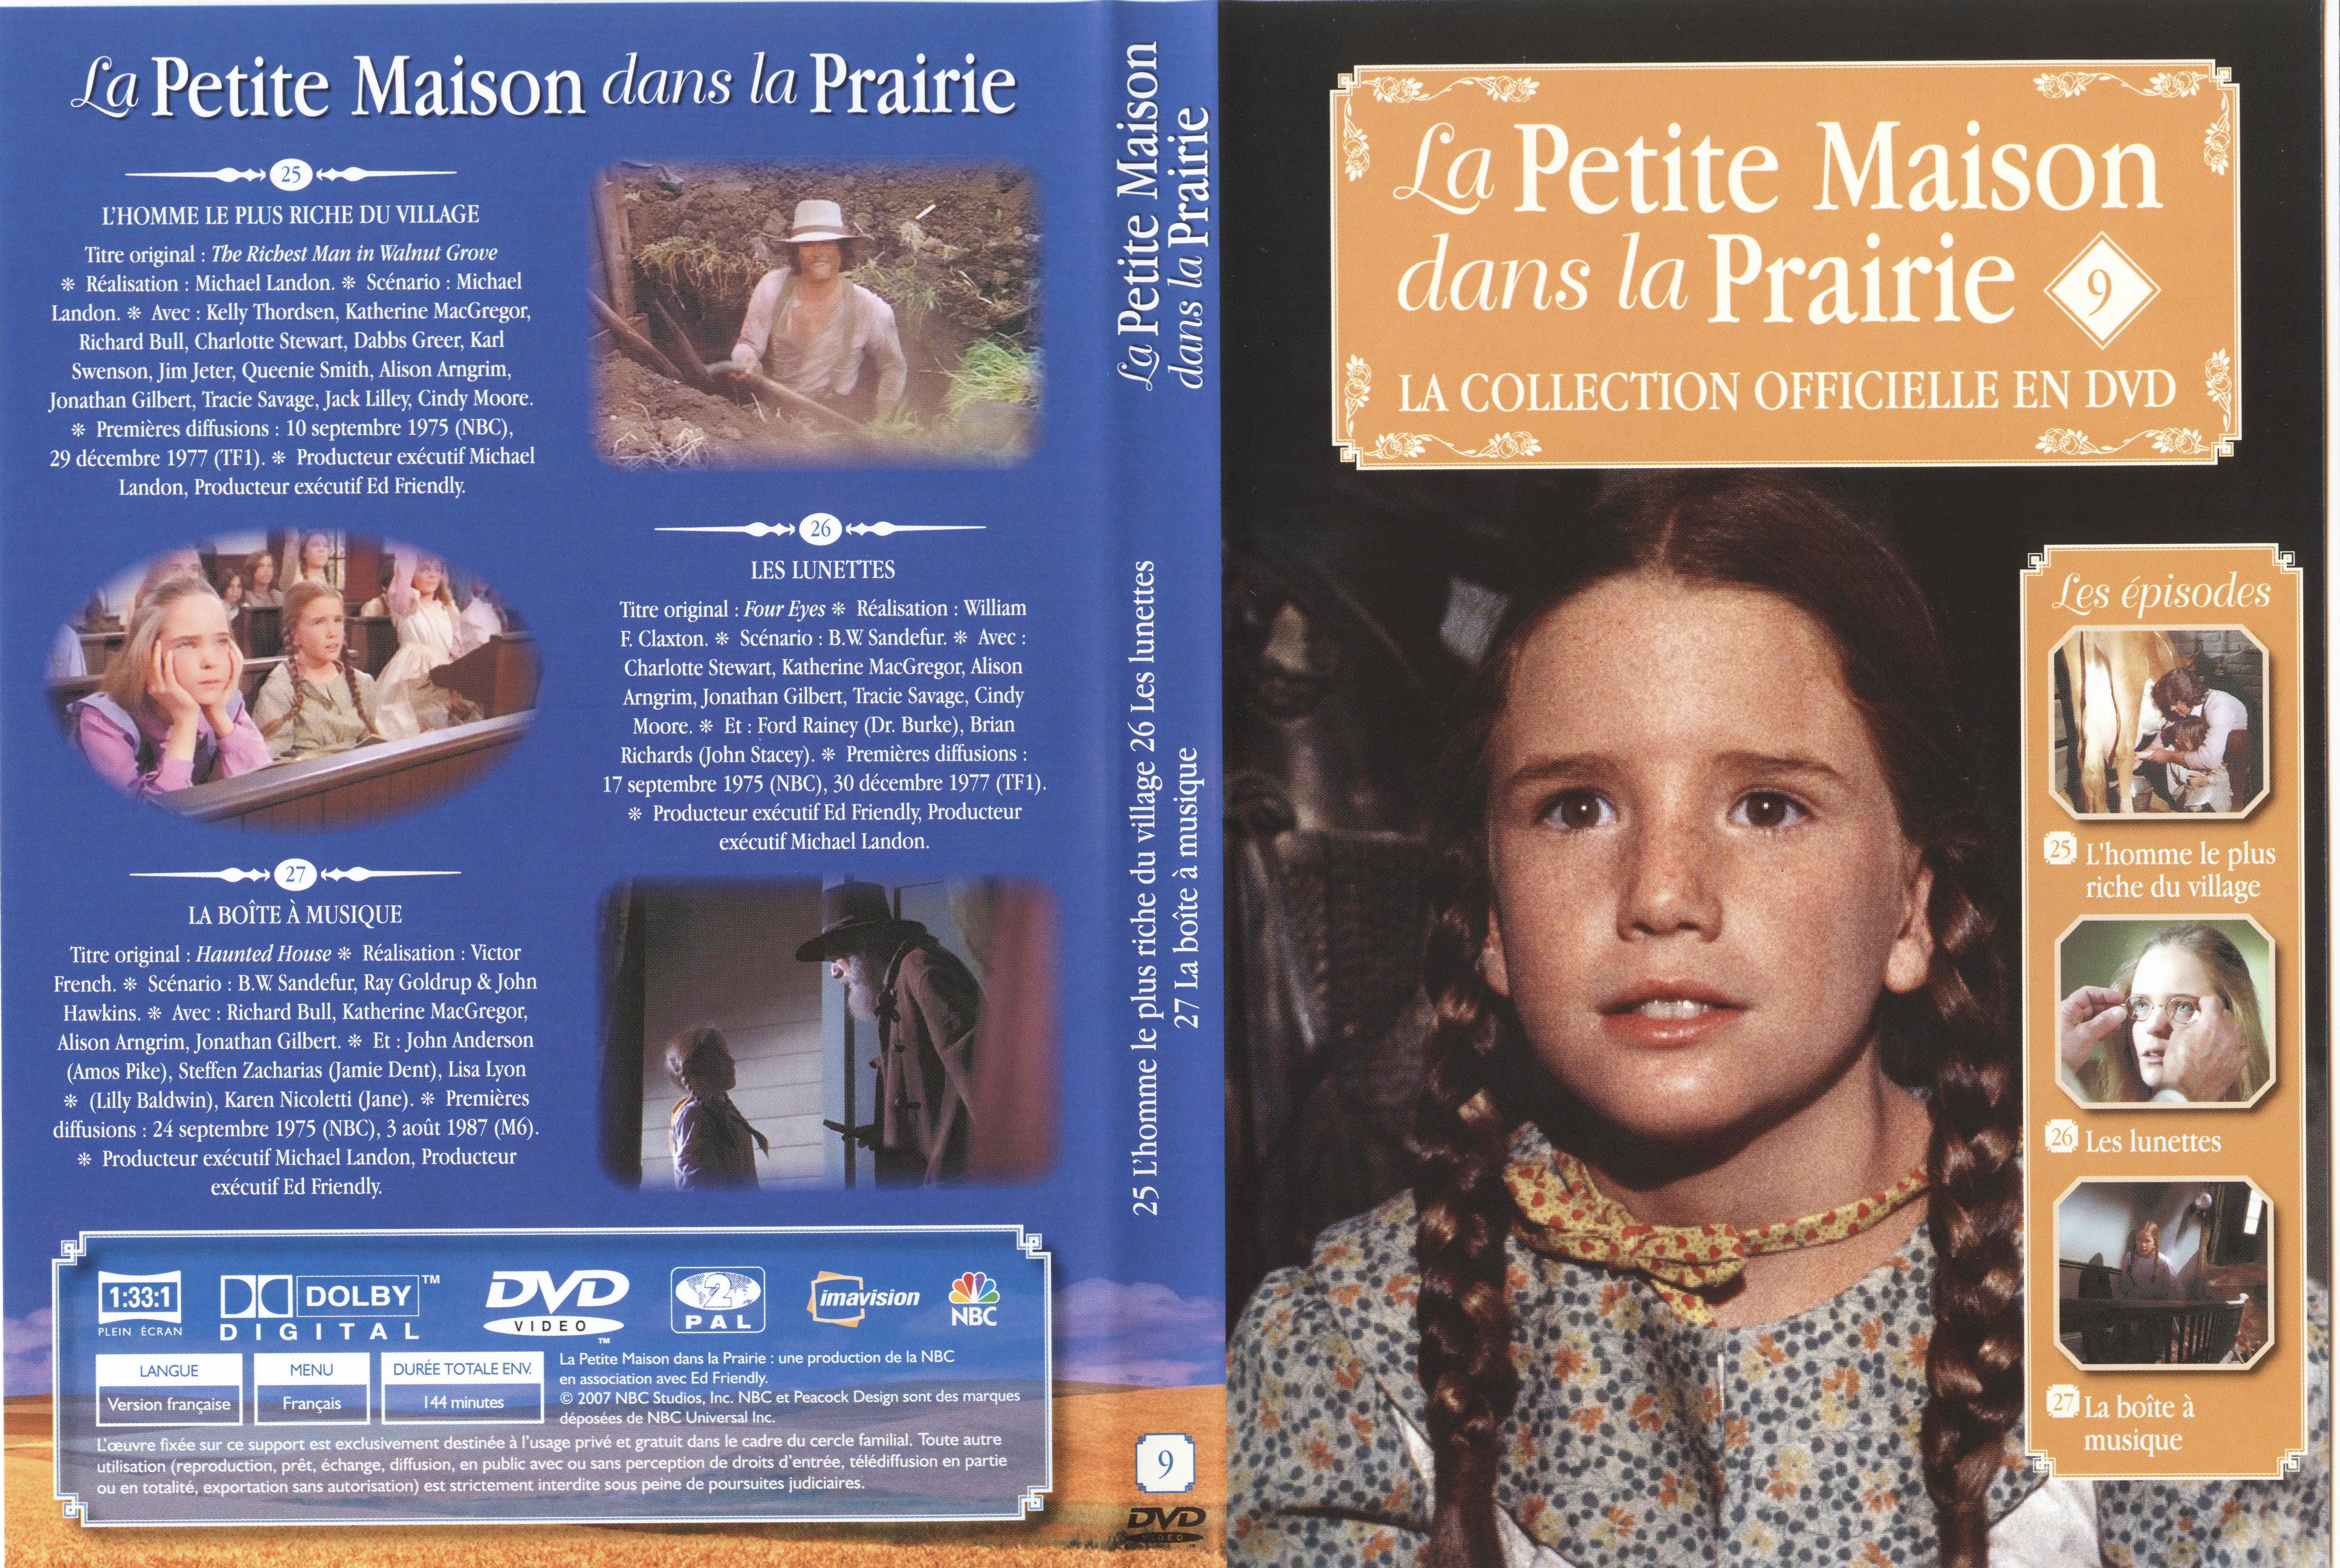 Jaquette DVD La petite maison dans la prairie La Collection vol 09